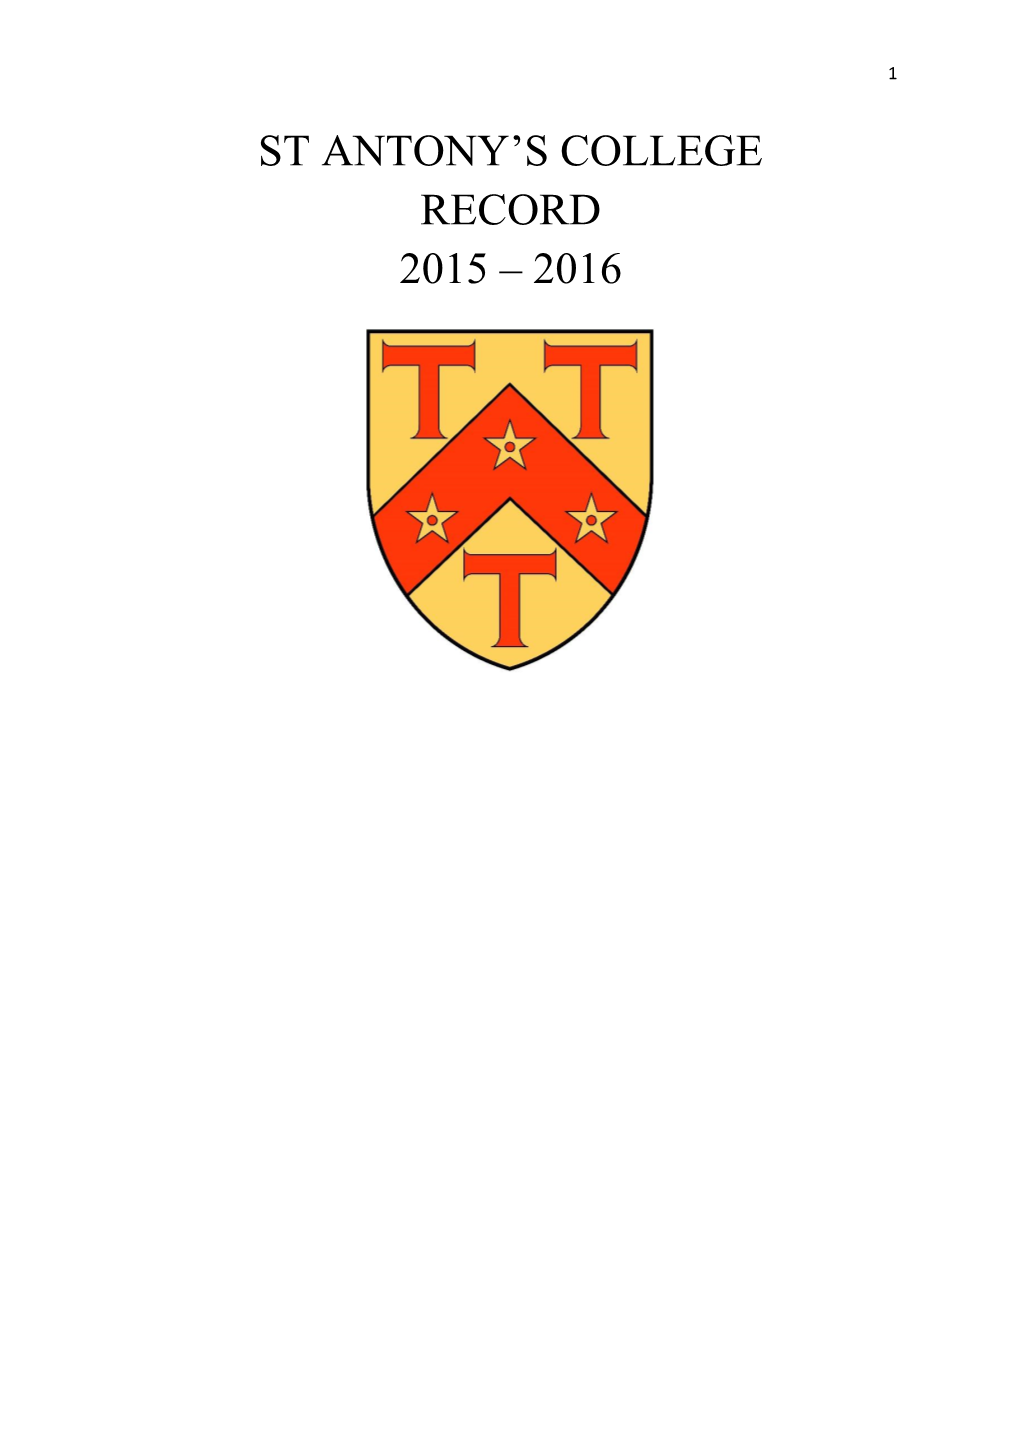 St Antony's College Record 2015